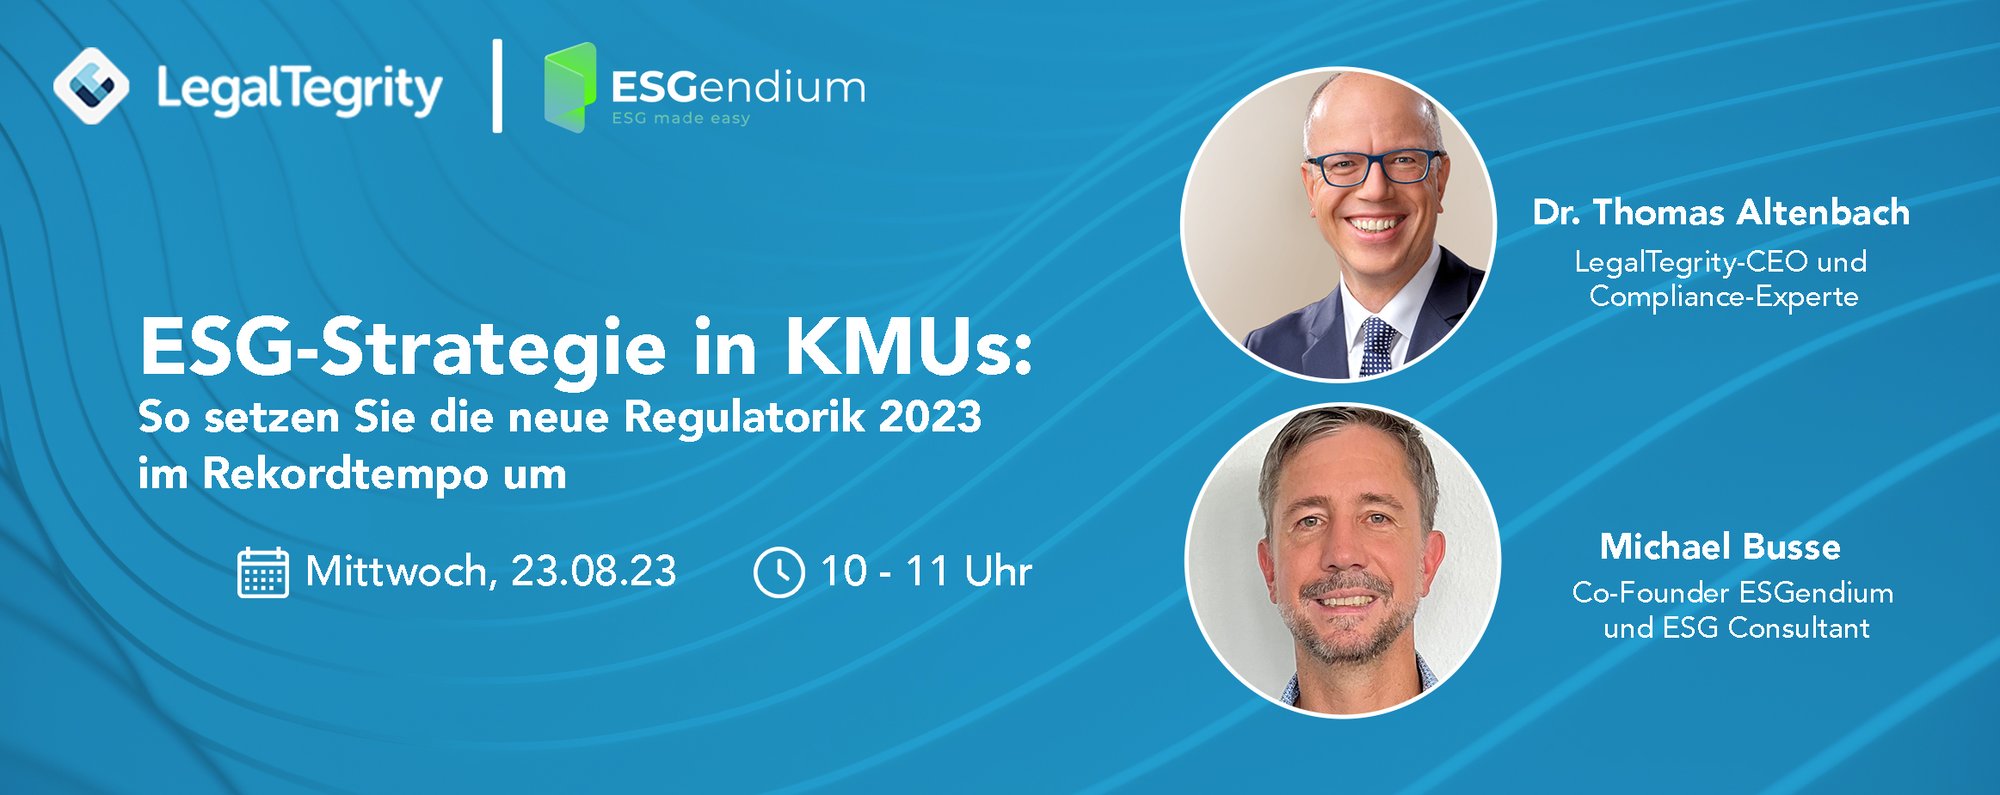 LegalTegrity Webinar ESG-Strategie in KMUs: So setzen Sie die neue Regulatorik 2023 im Rekordtempo um  23.08.2023